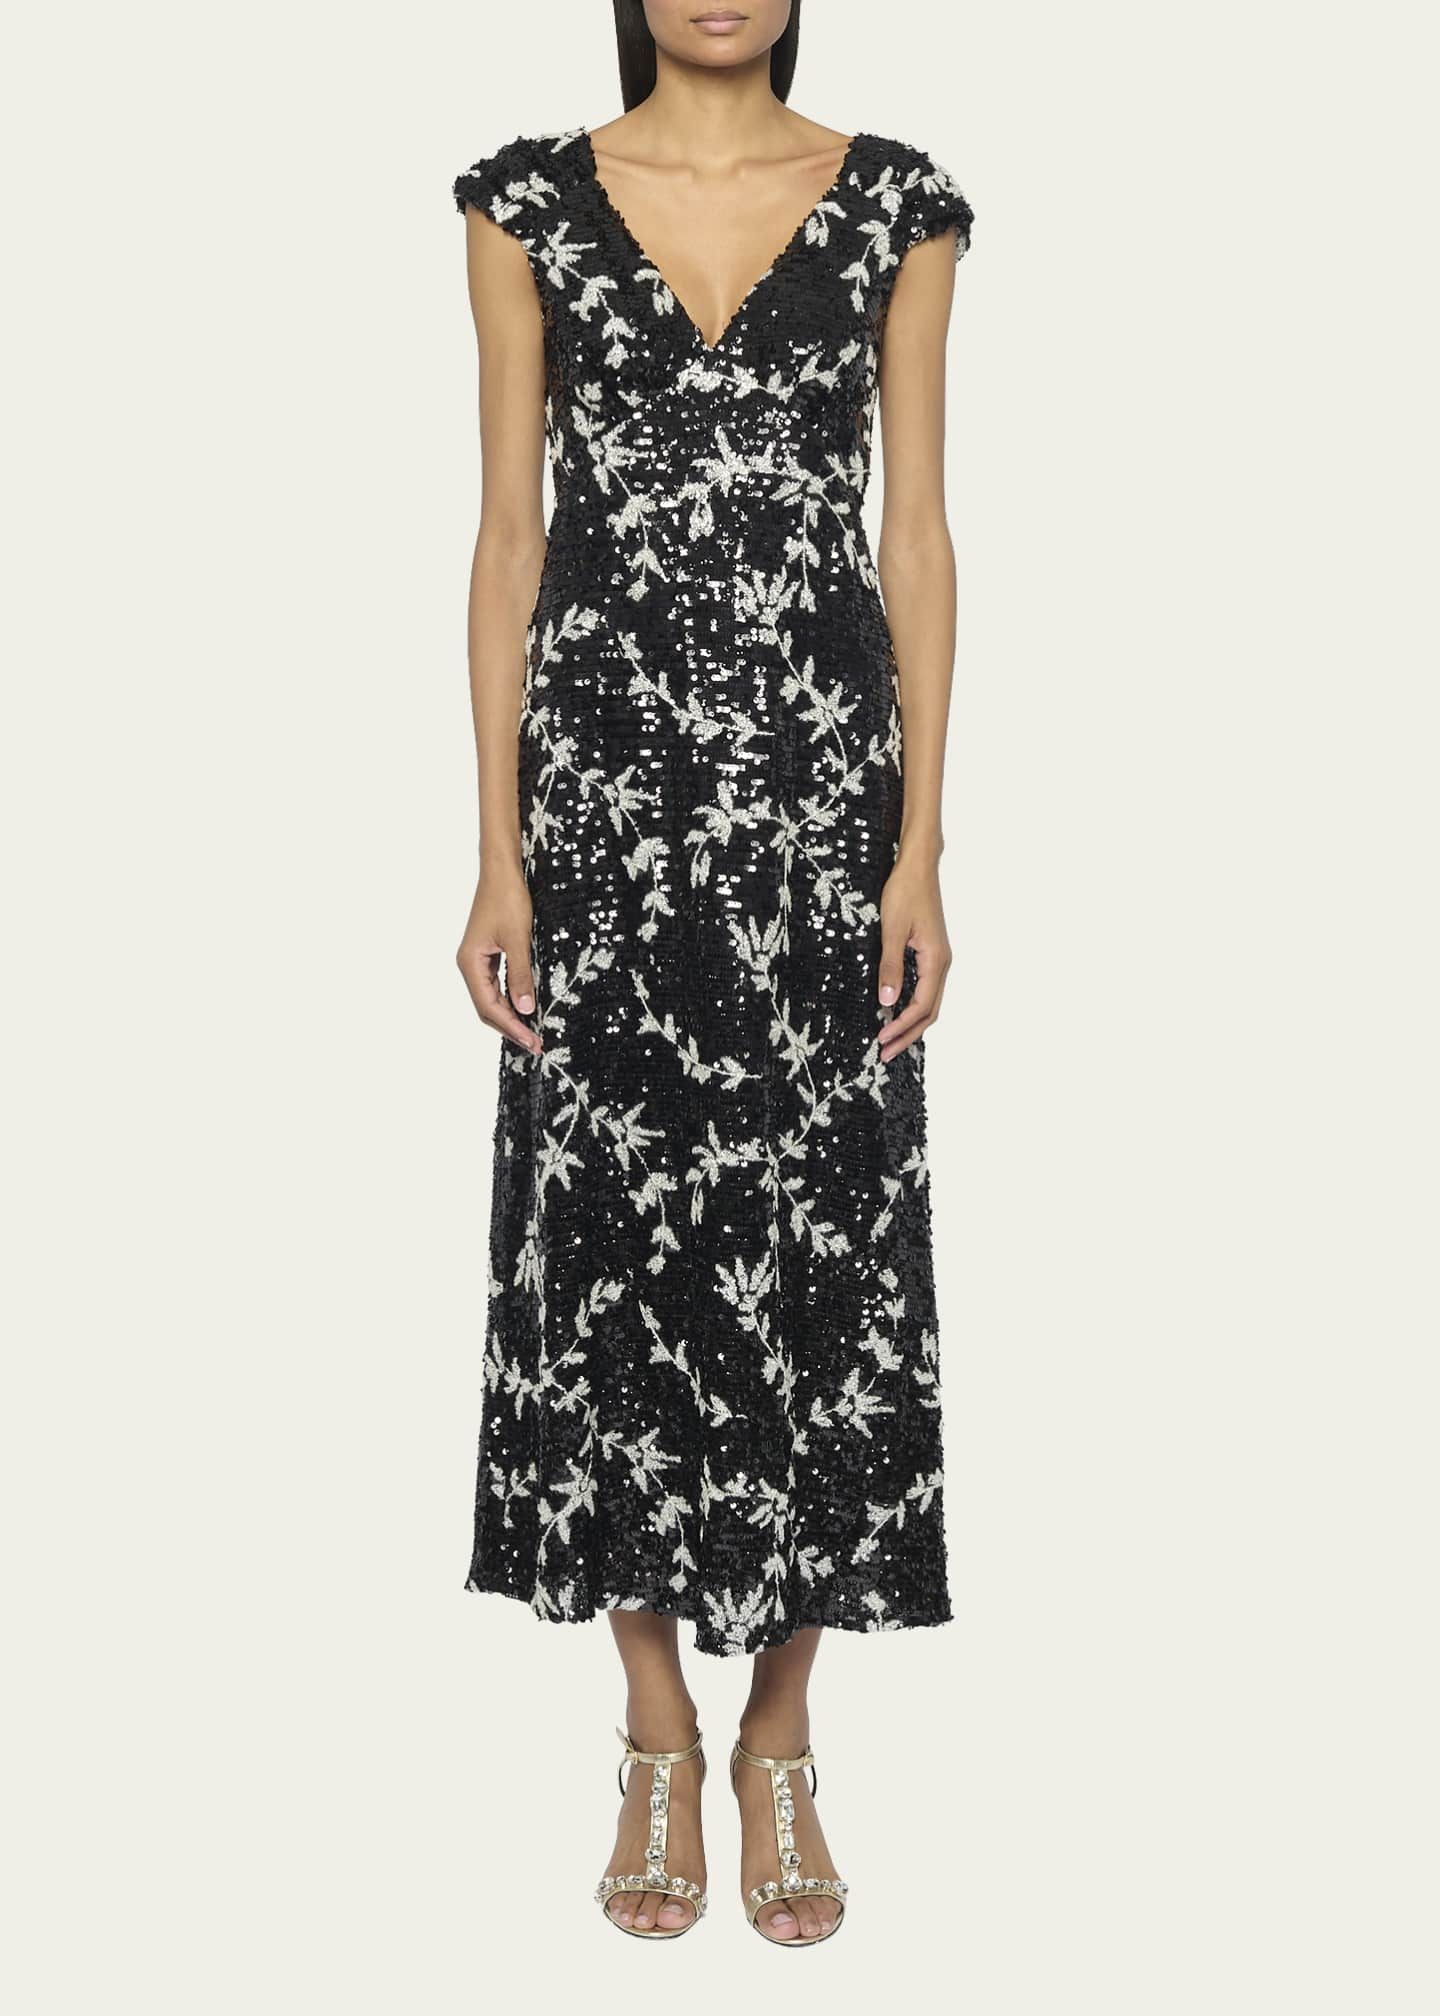 Erdem Vine Sequin-Embellished Dress | Bergdorf Goodman